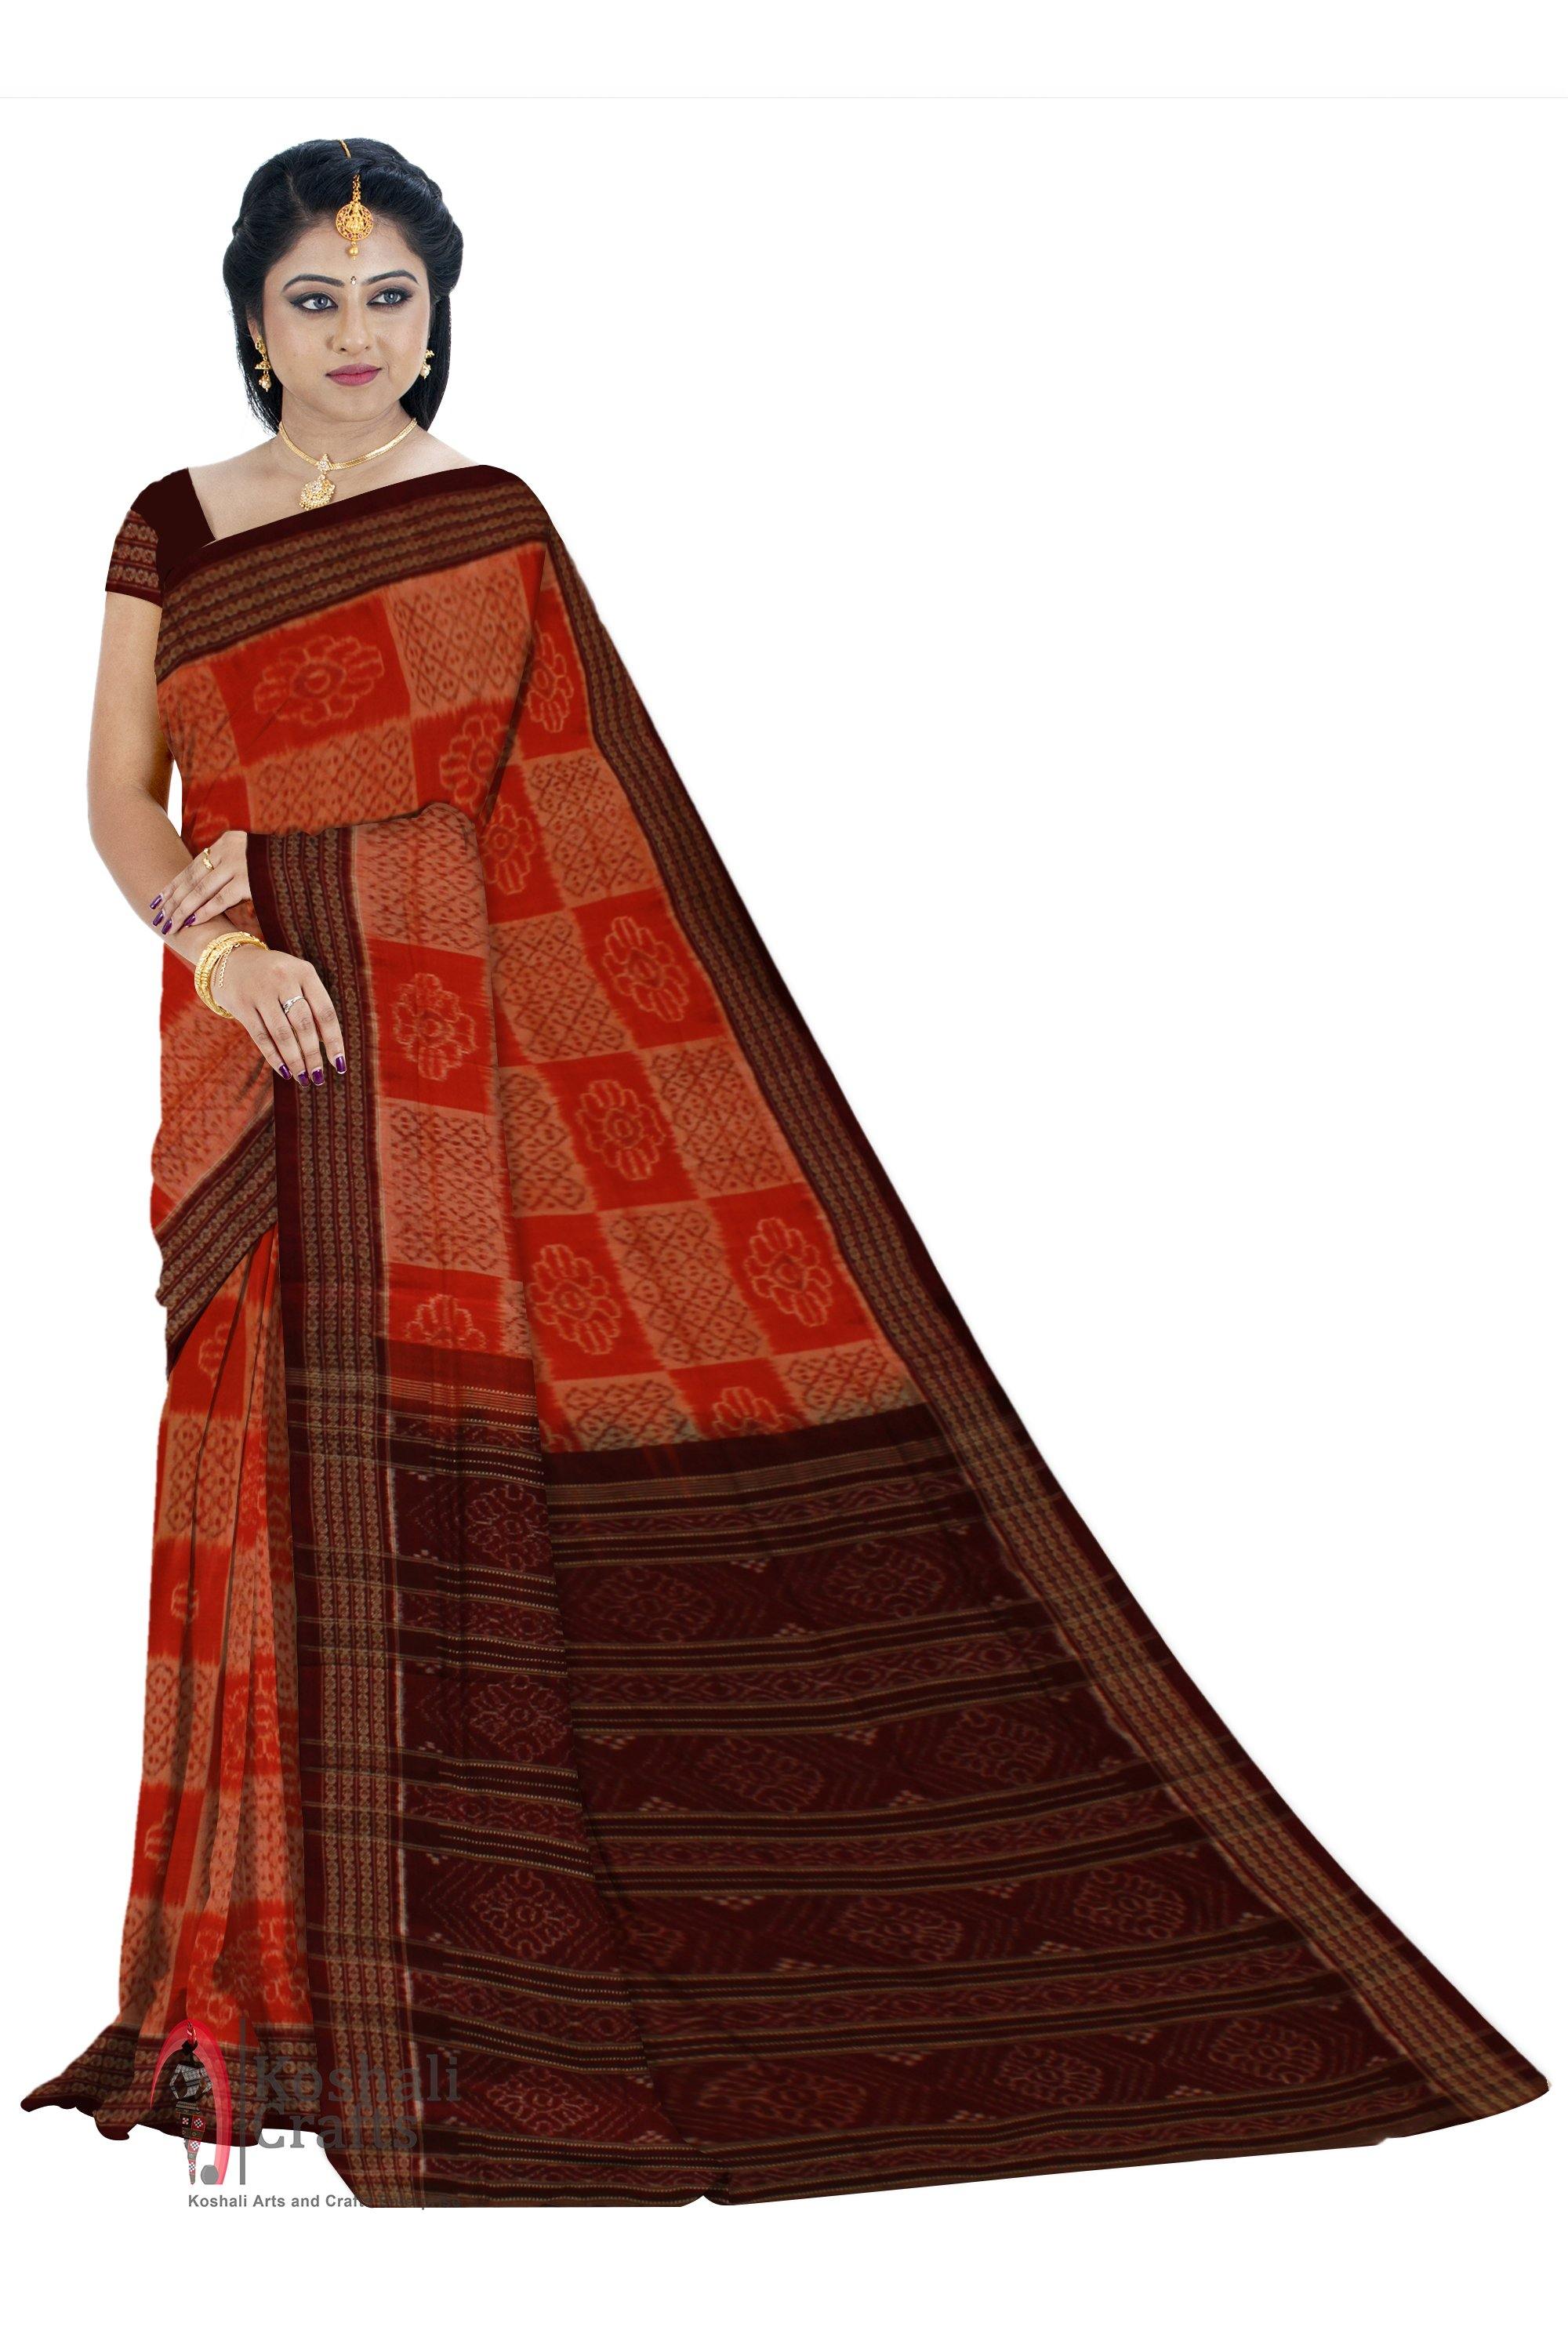 Flower pattern Orange Cotton Saree - Koshali Arts & Crafts Enterprise